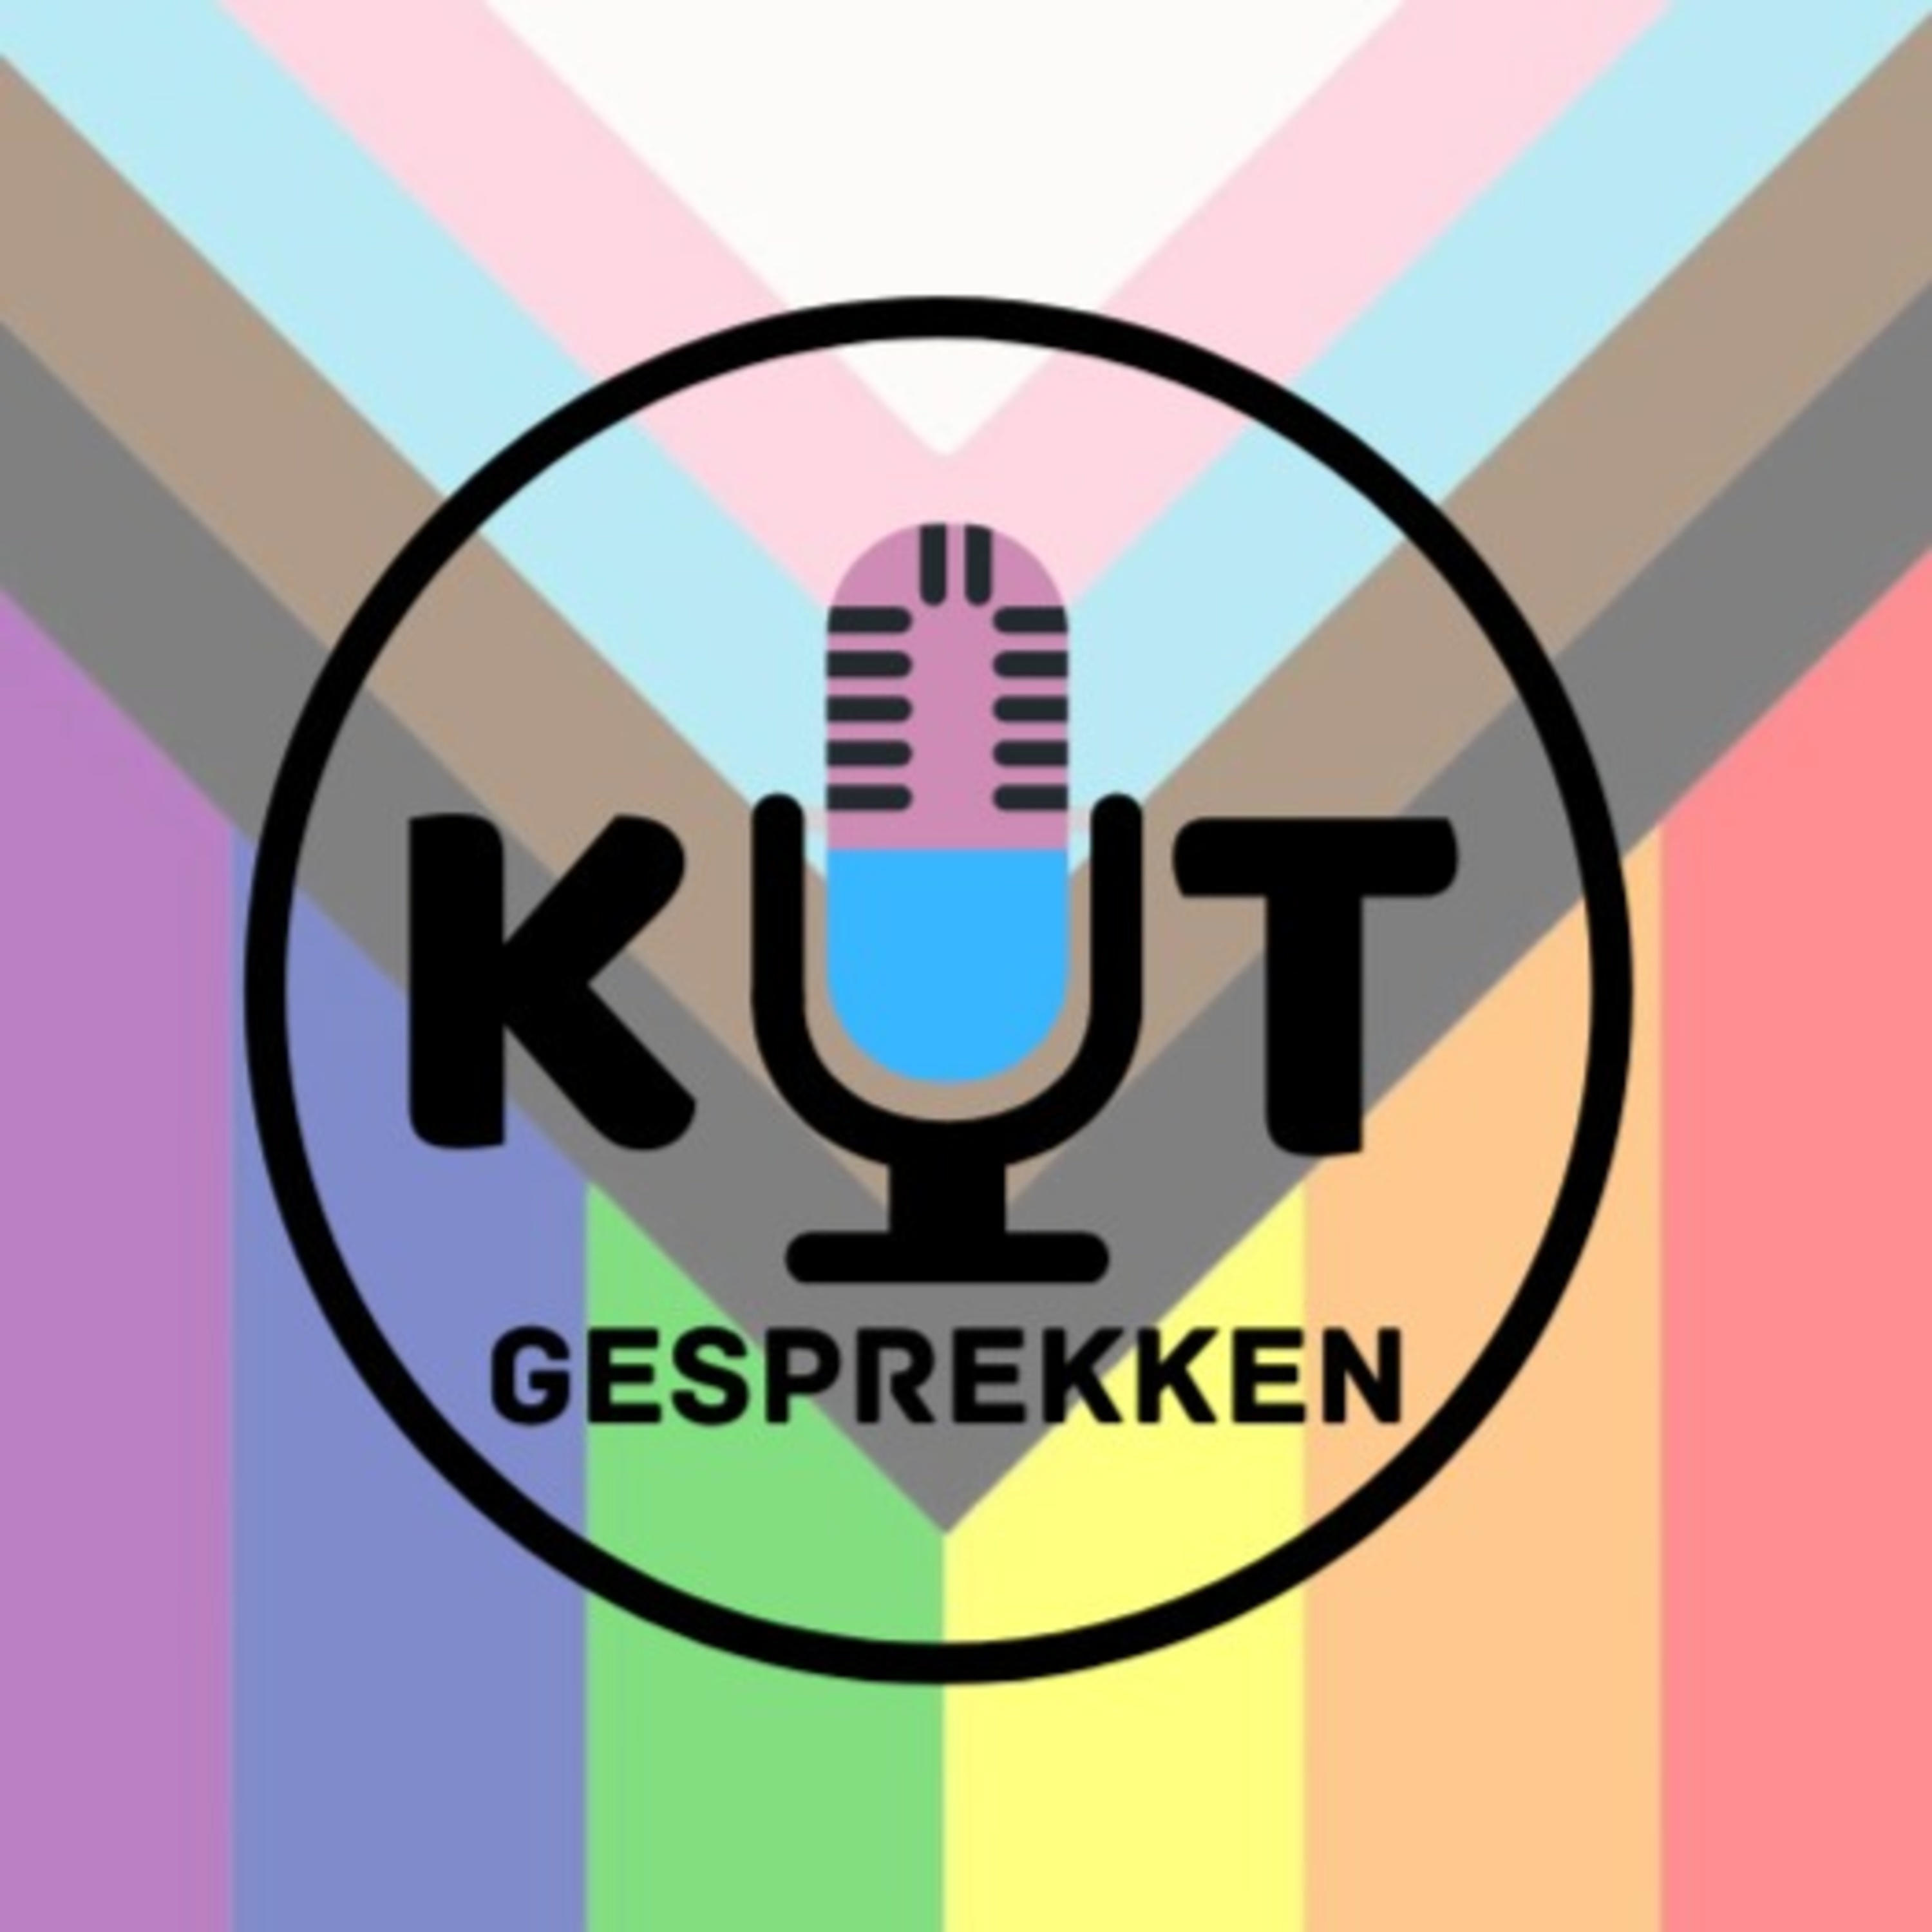 In zwarte letters staan de woorden 'Kut' en 'gesprekken' in een zwarte circul. Op de achtergrond staat de illustratie van de Progress Pride vlag, verticaal.